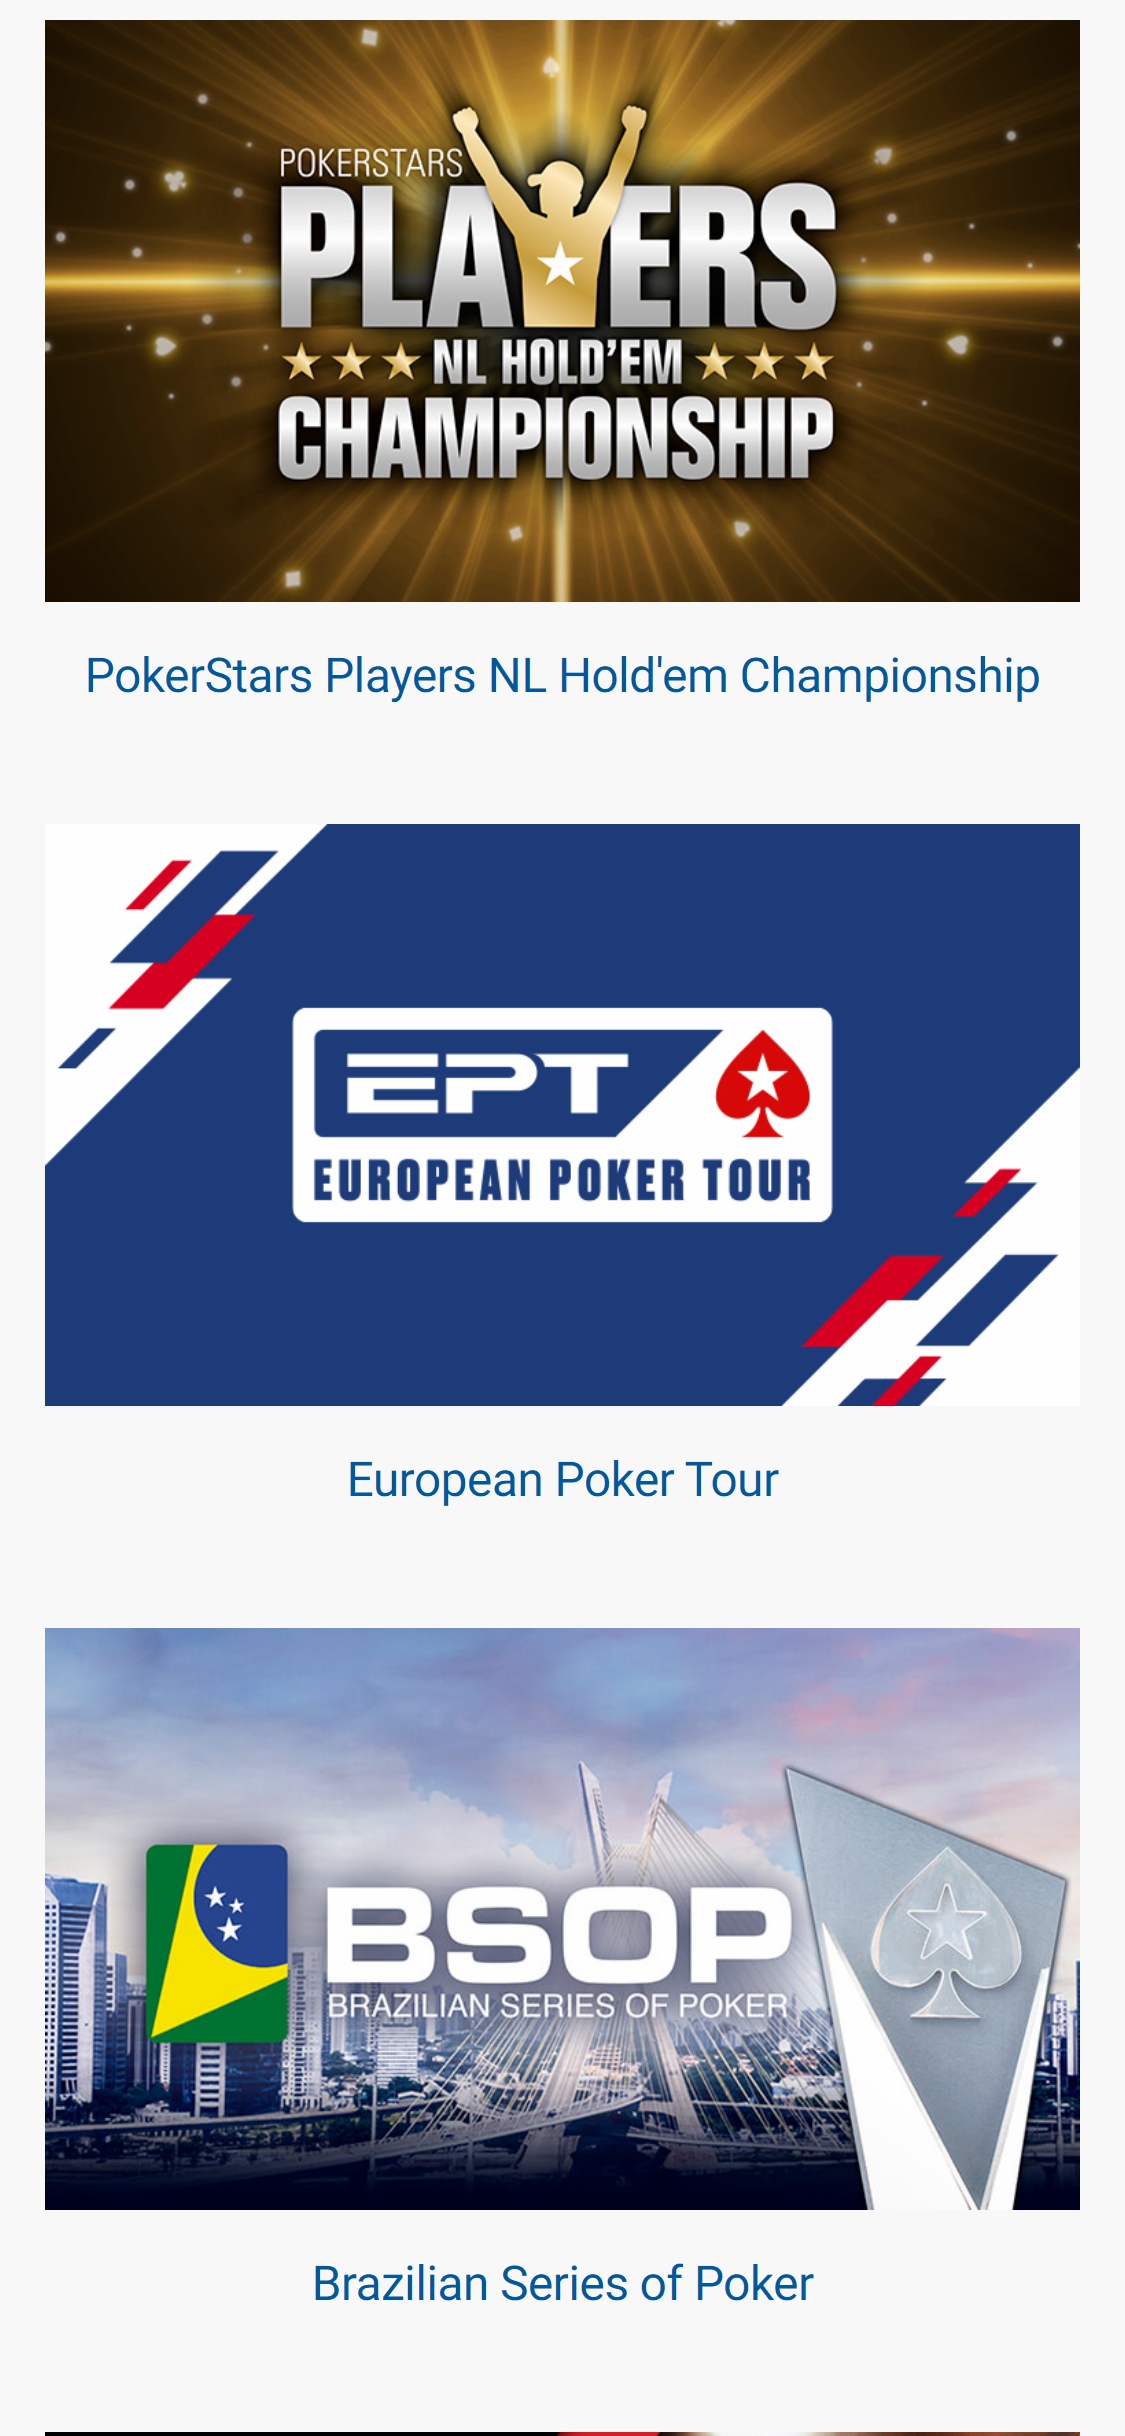 Poker Stars Casino EU Mobile Games Review